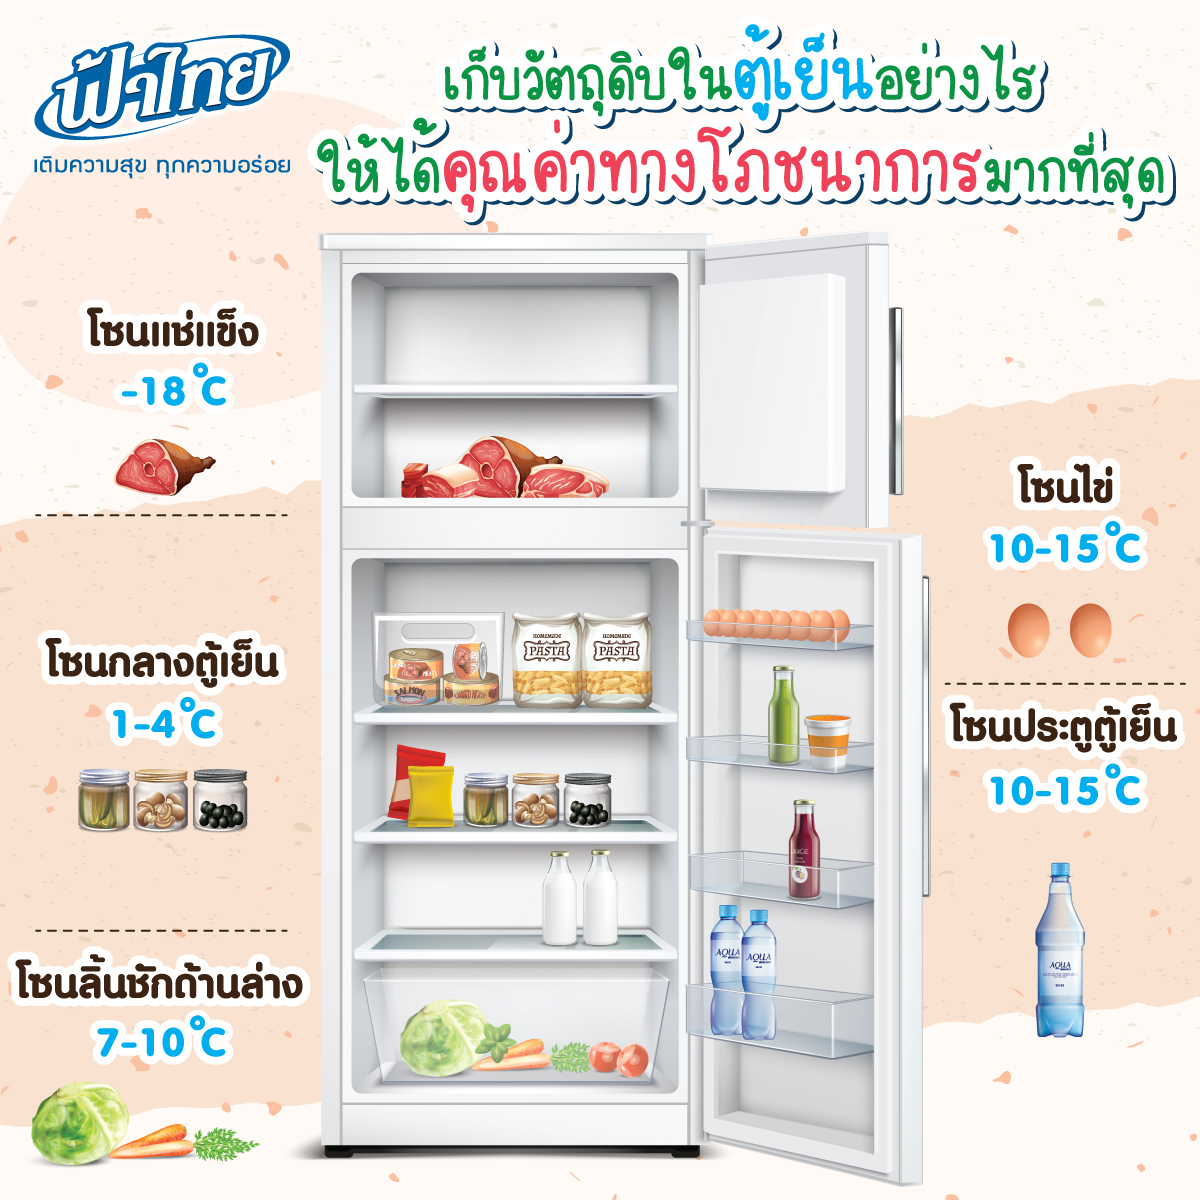 เก็บวัตถุดิบในตู้เย็นอย่างไร ให้ได้คุณค่าทางโภชนาการมากที่สุด